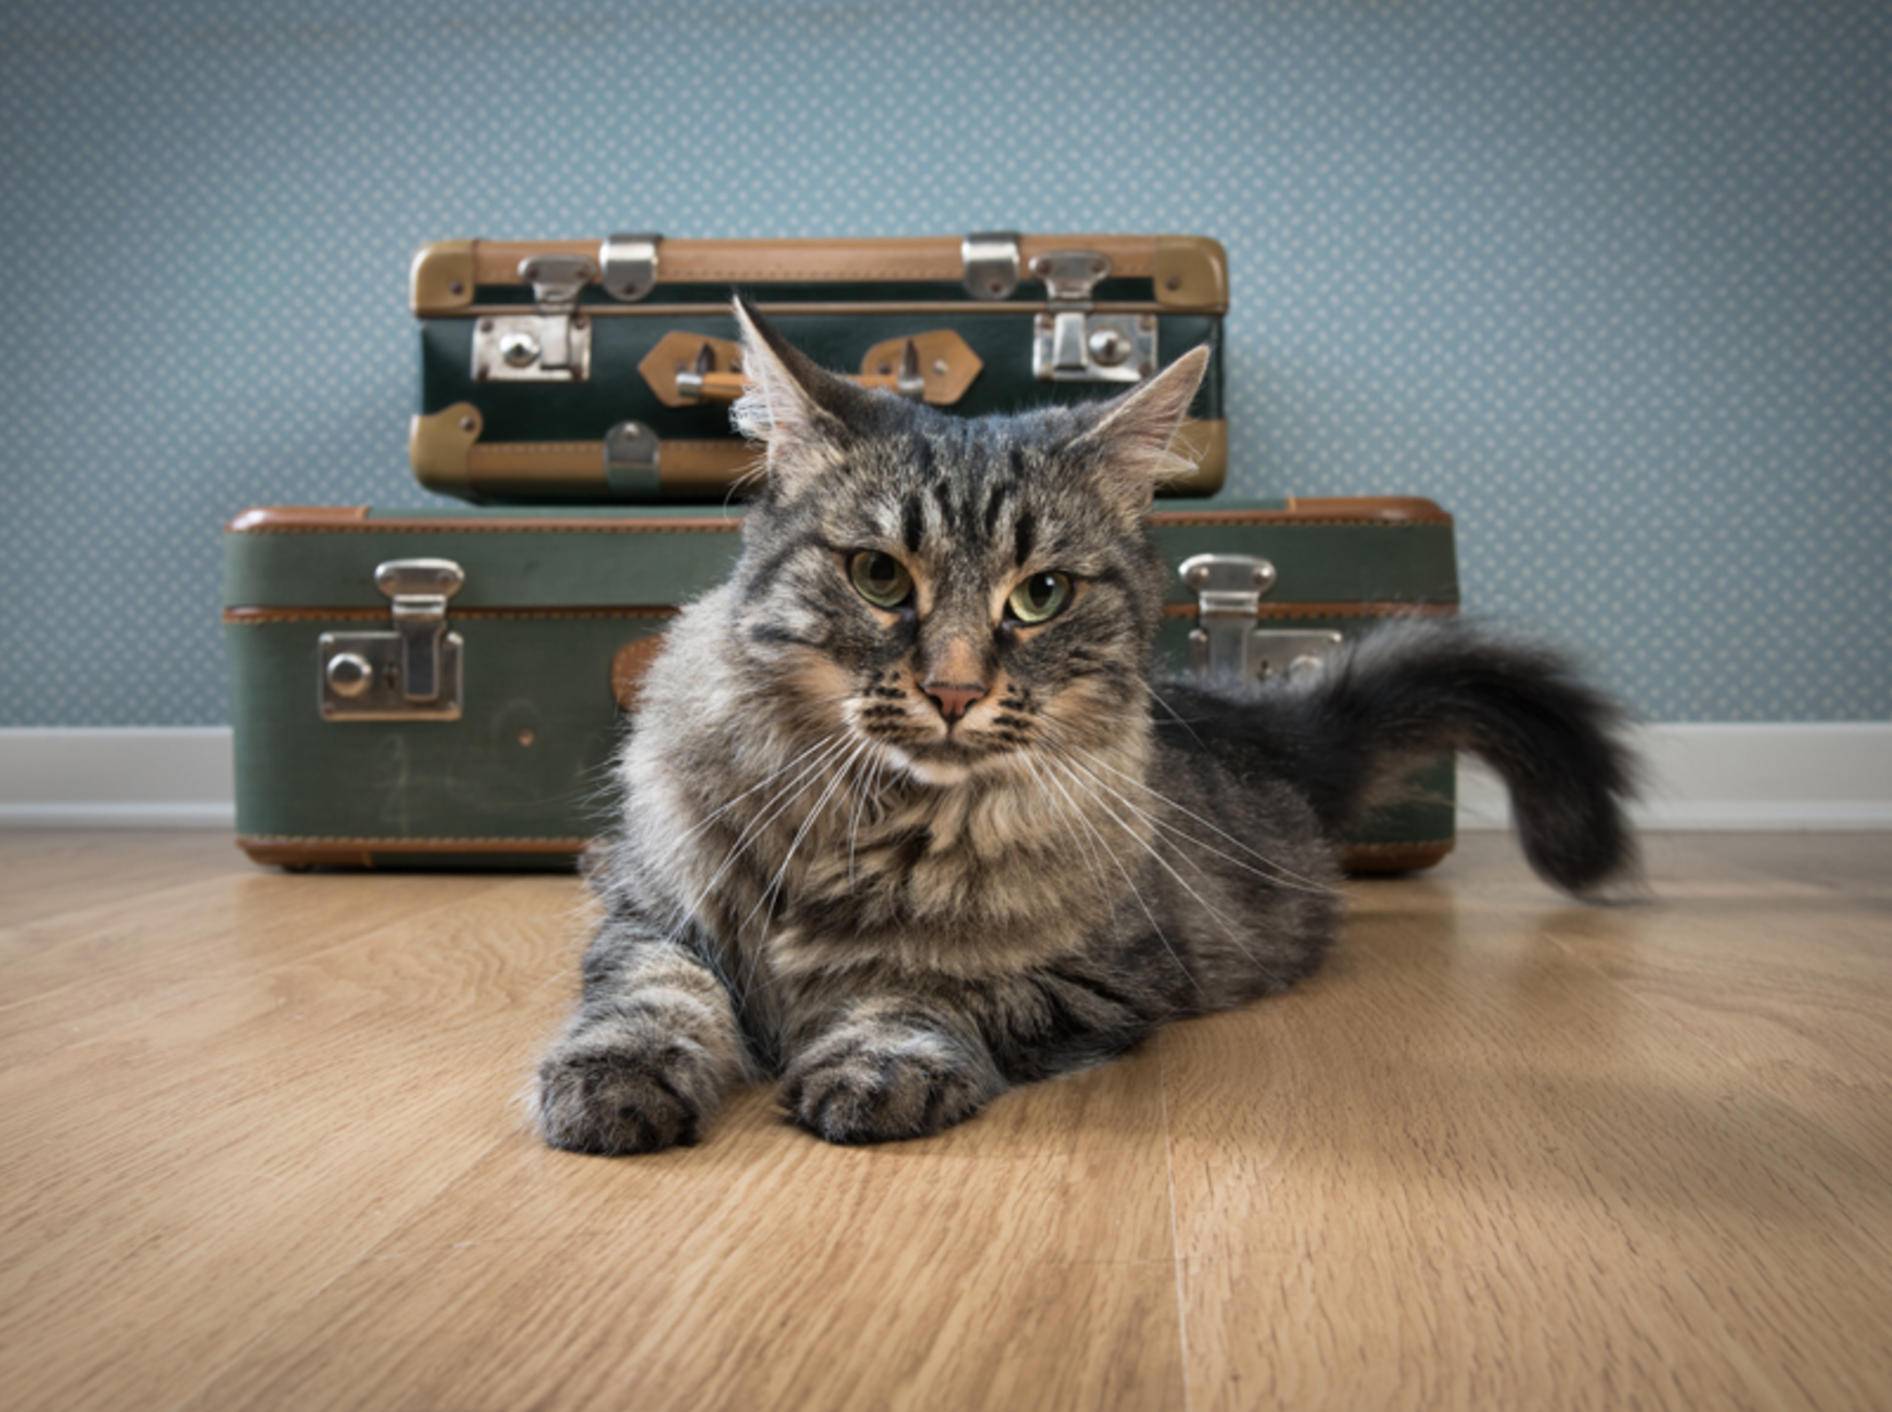 Die Koffer sind gepackt: Soll die Katze mit in den Urlaub? – Bild: Shutterstock / Stock Asso